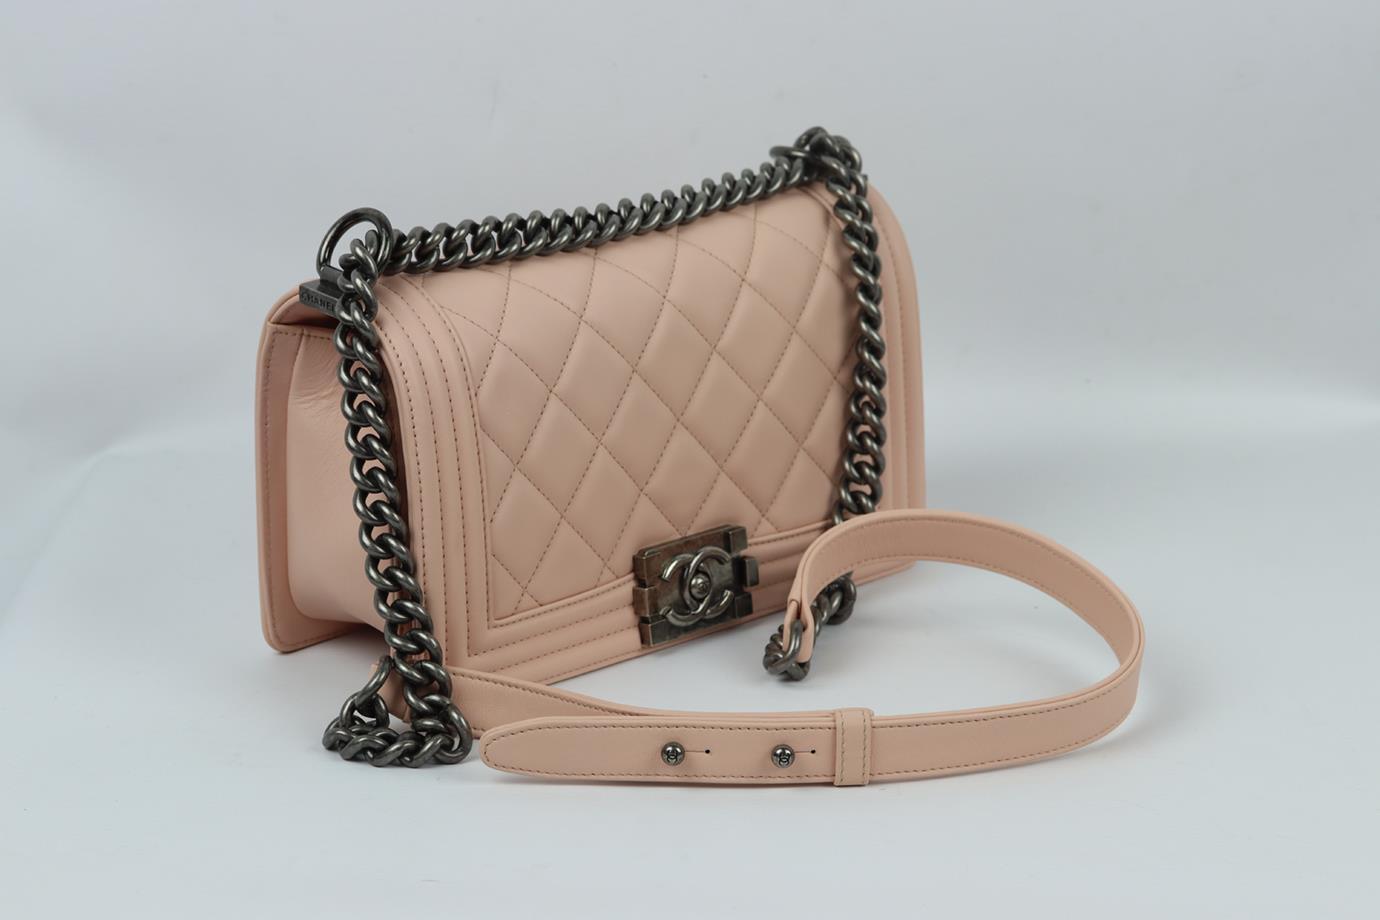 Chanel 2014 Boy Medium Quilted Leather Shoulder Bag For Sale 1